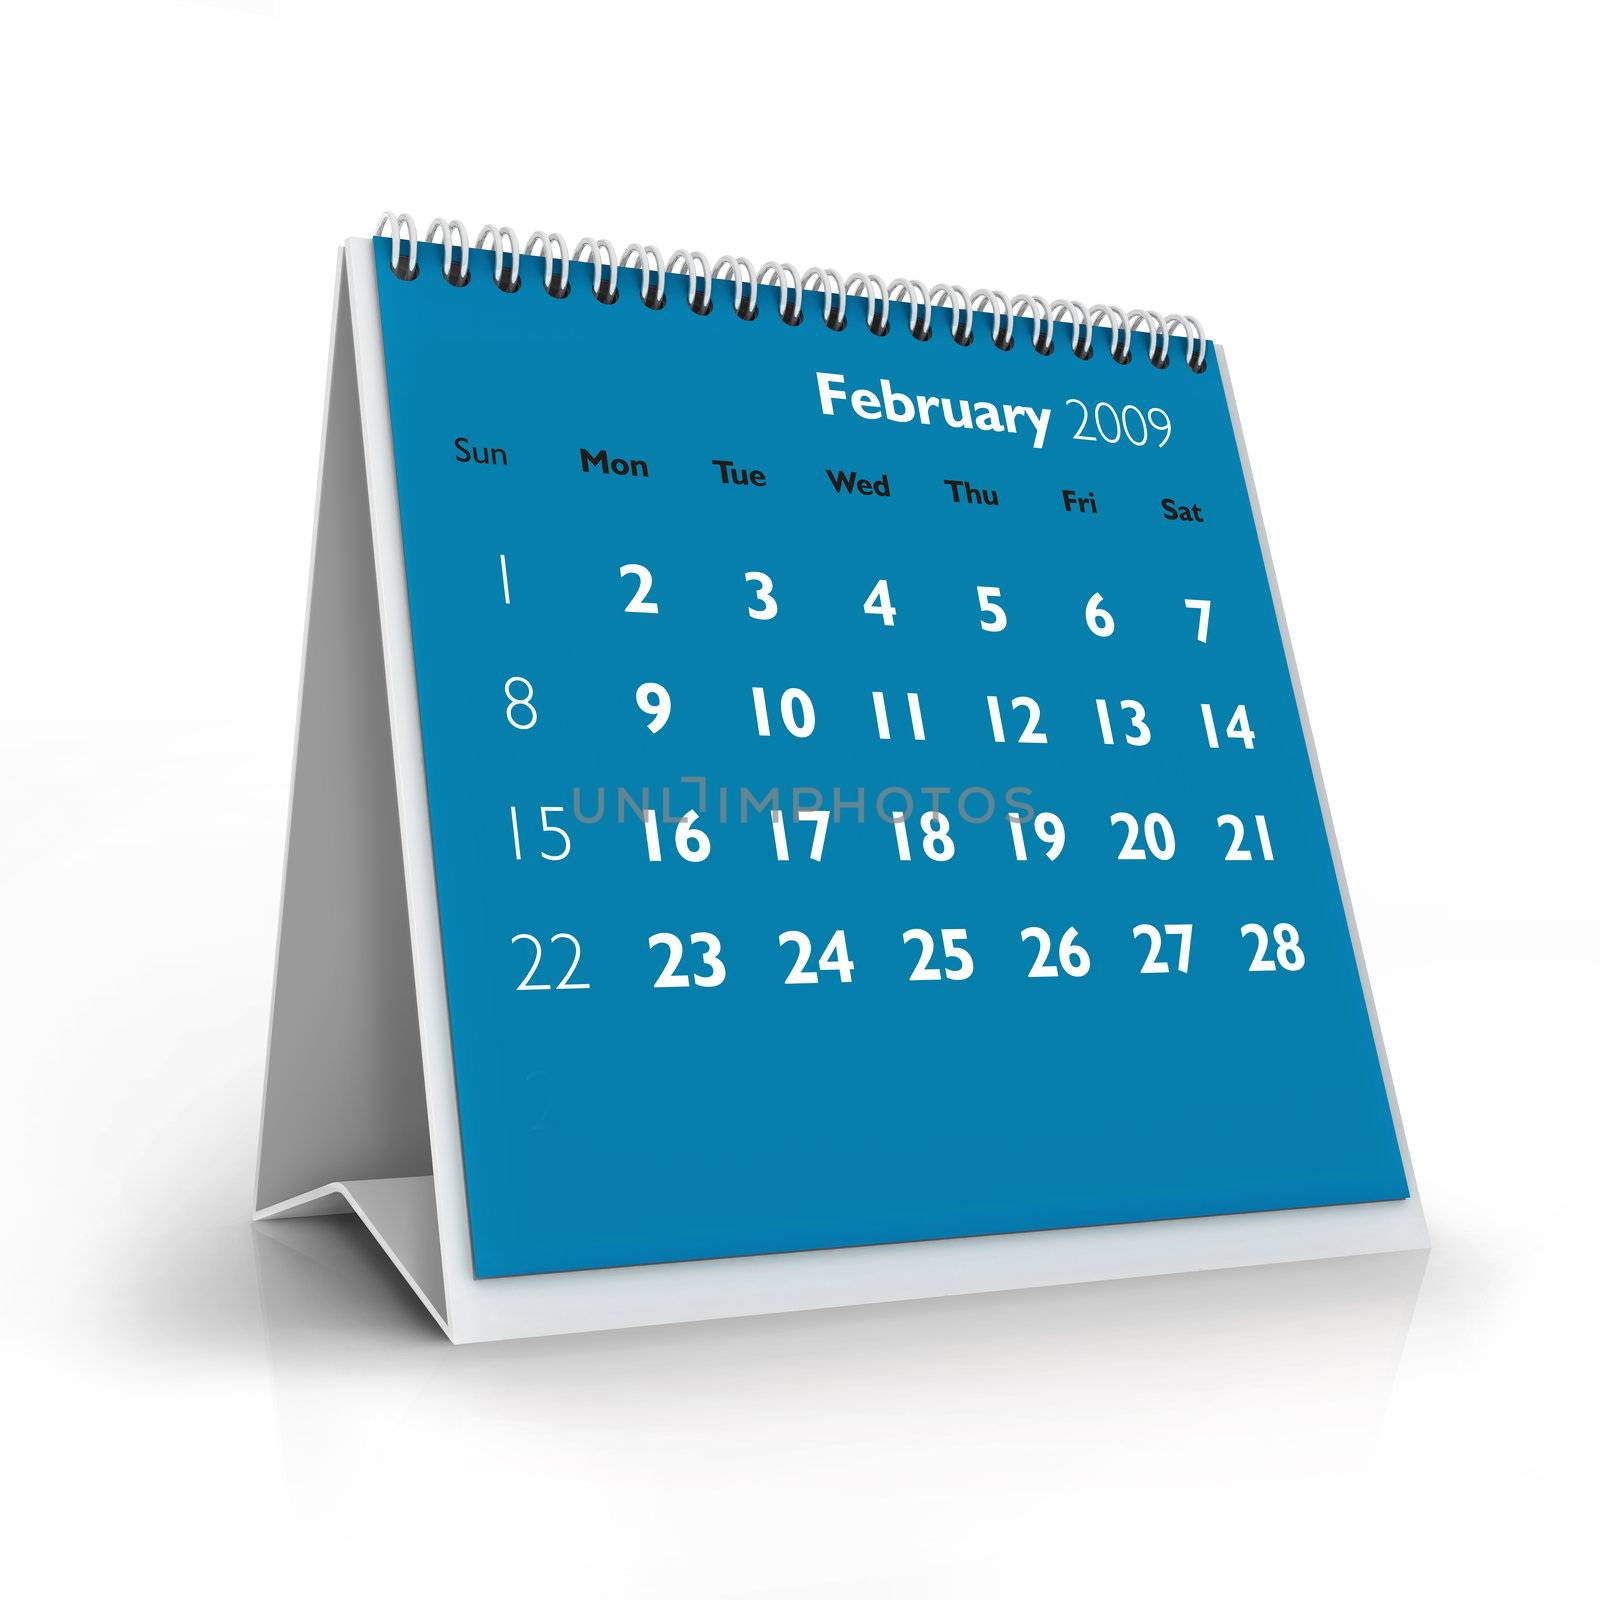 3D desktop calendar, February 2009